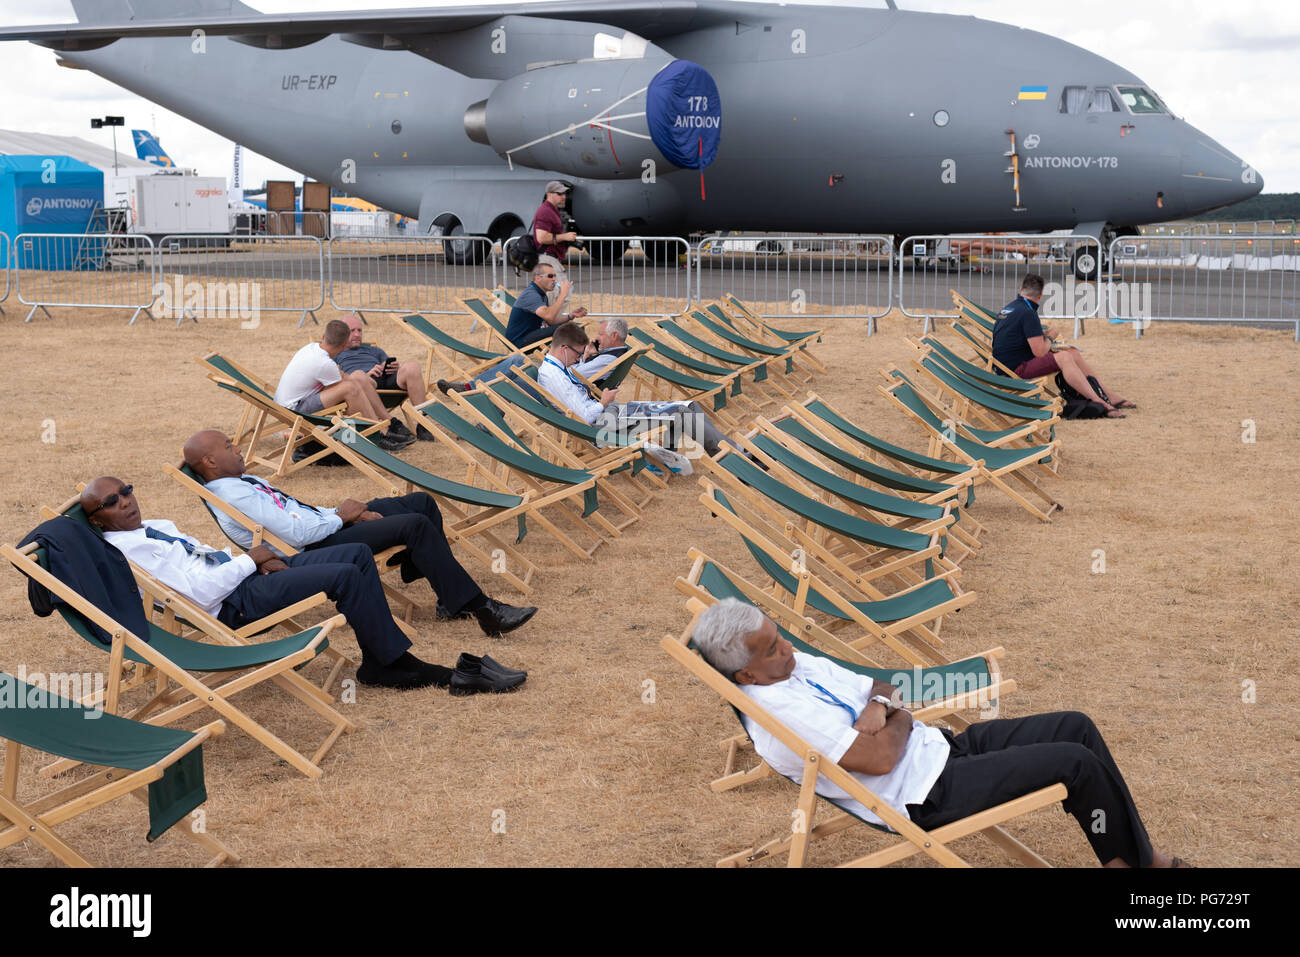 Vous relaxant dans des chaises longues au Farnborough Airshow avec un russe Antonov 178 en arrière-plan et de l'herbe brûlée d'une canicule d'été Banque D'Images